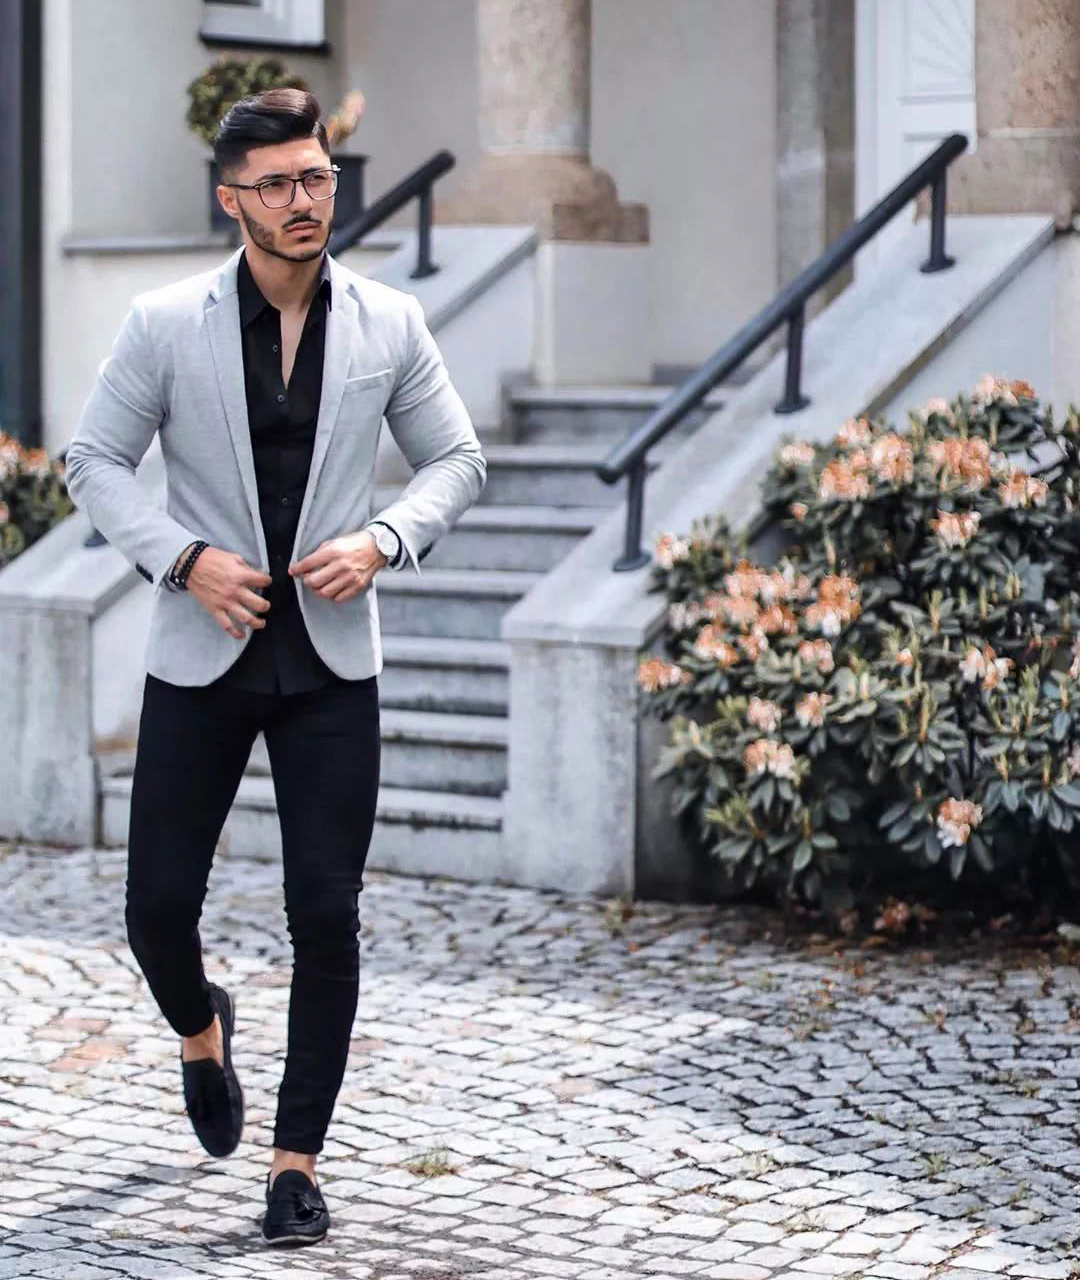 How to Wear a Men’s Black Dress Shirt - Suits Expert